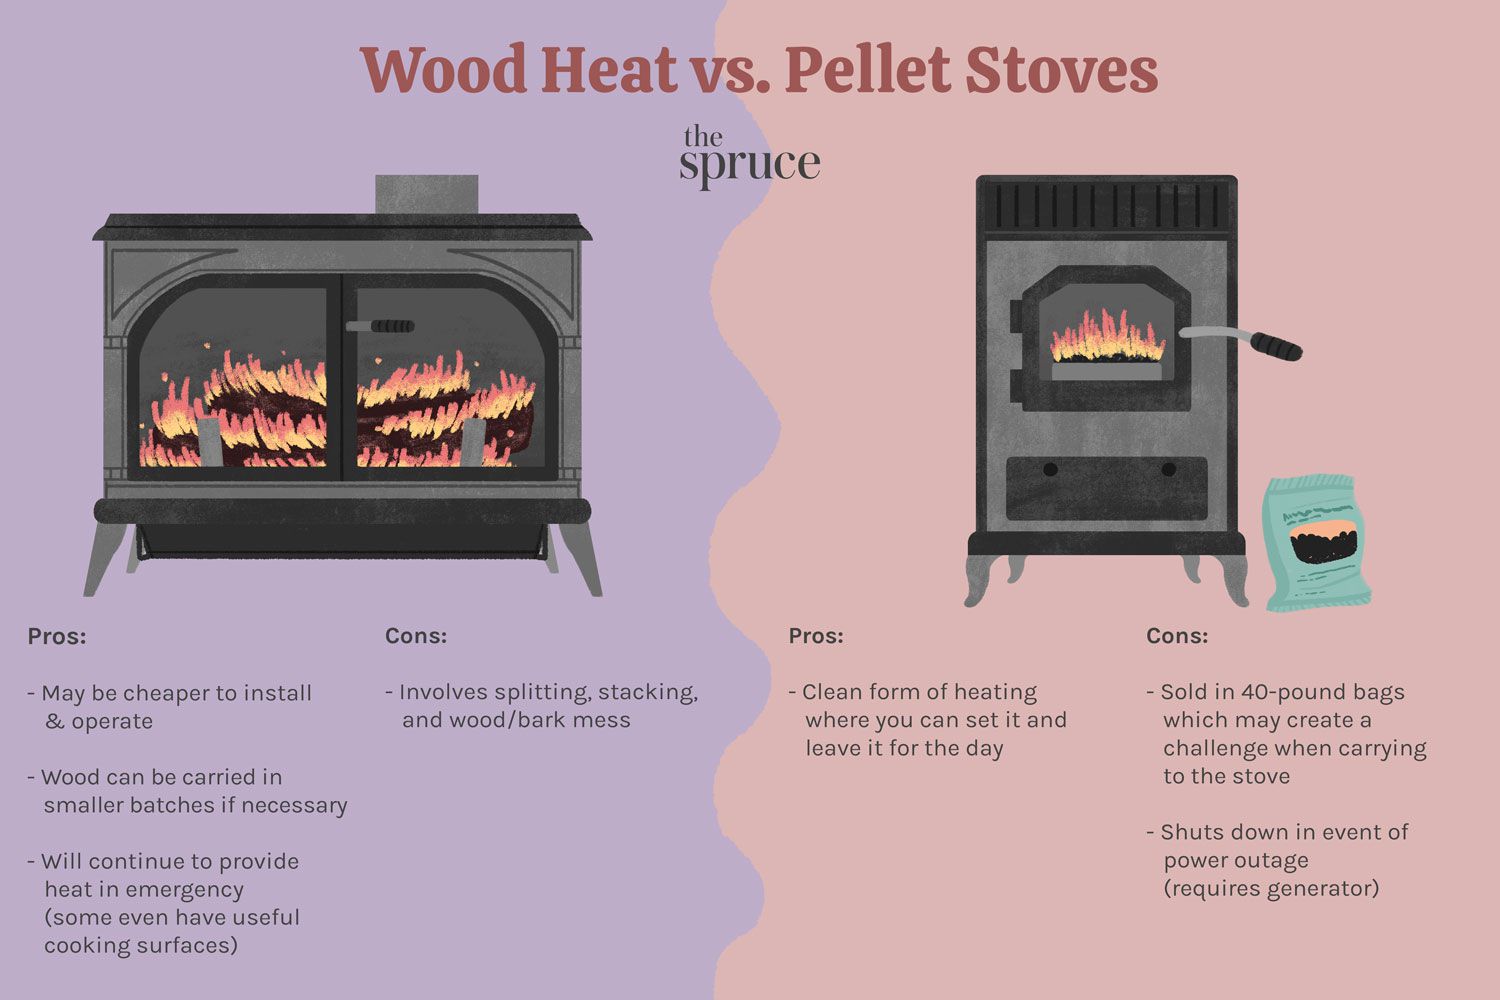 ilustração de fogões a lenha vs. fogões a pellets